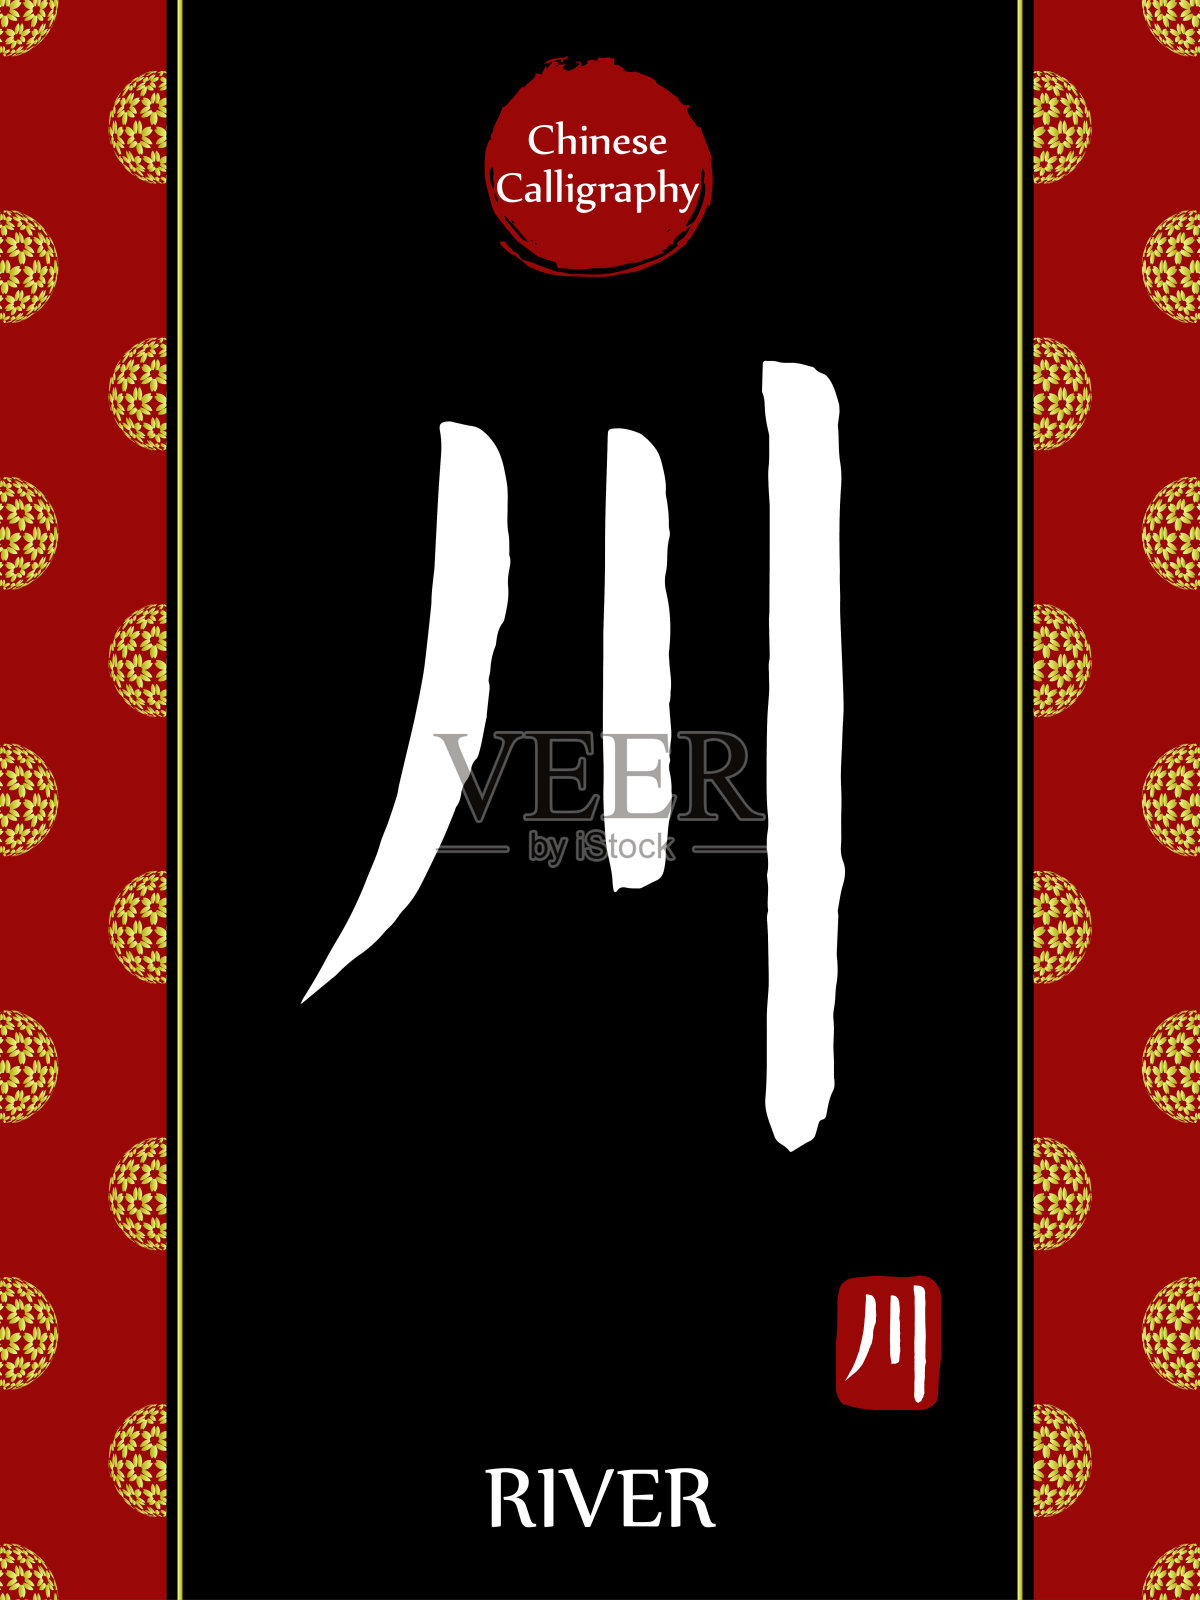 中国书法象形文字翻译:河。亚洲金花球农历新年图案。向量中国符号在黑色背景。手绘图画文字。毛笔书法插画图片素材